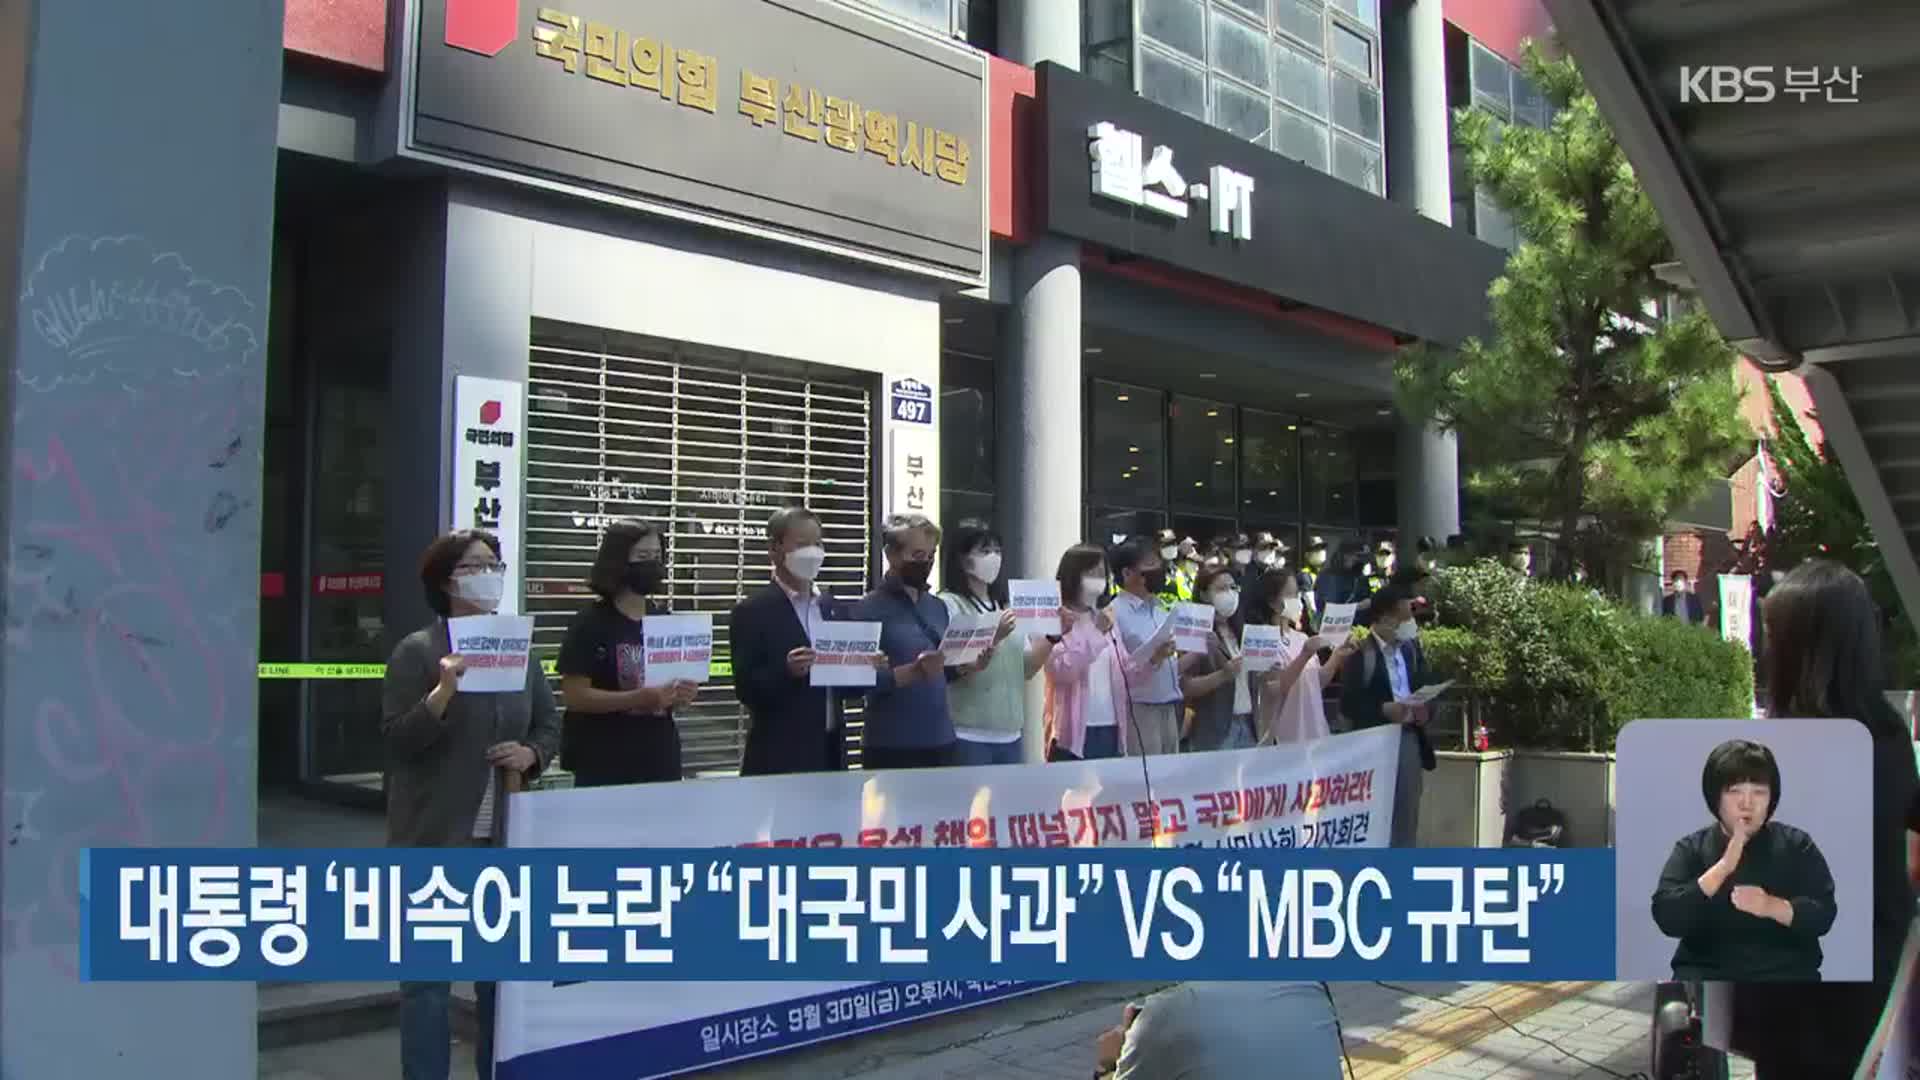 대통령 ‘비속어 논란’ “대국민 사과” vs “MBC 규탄”